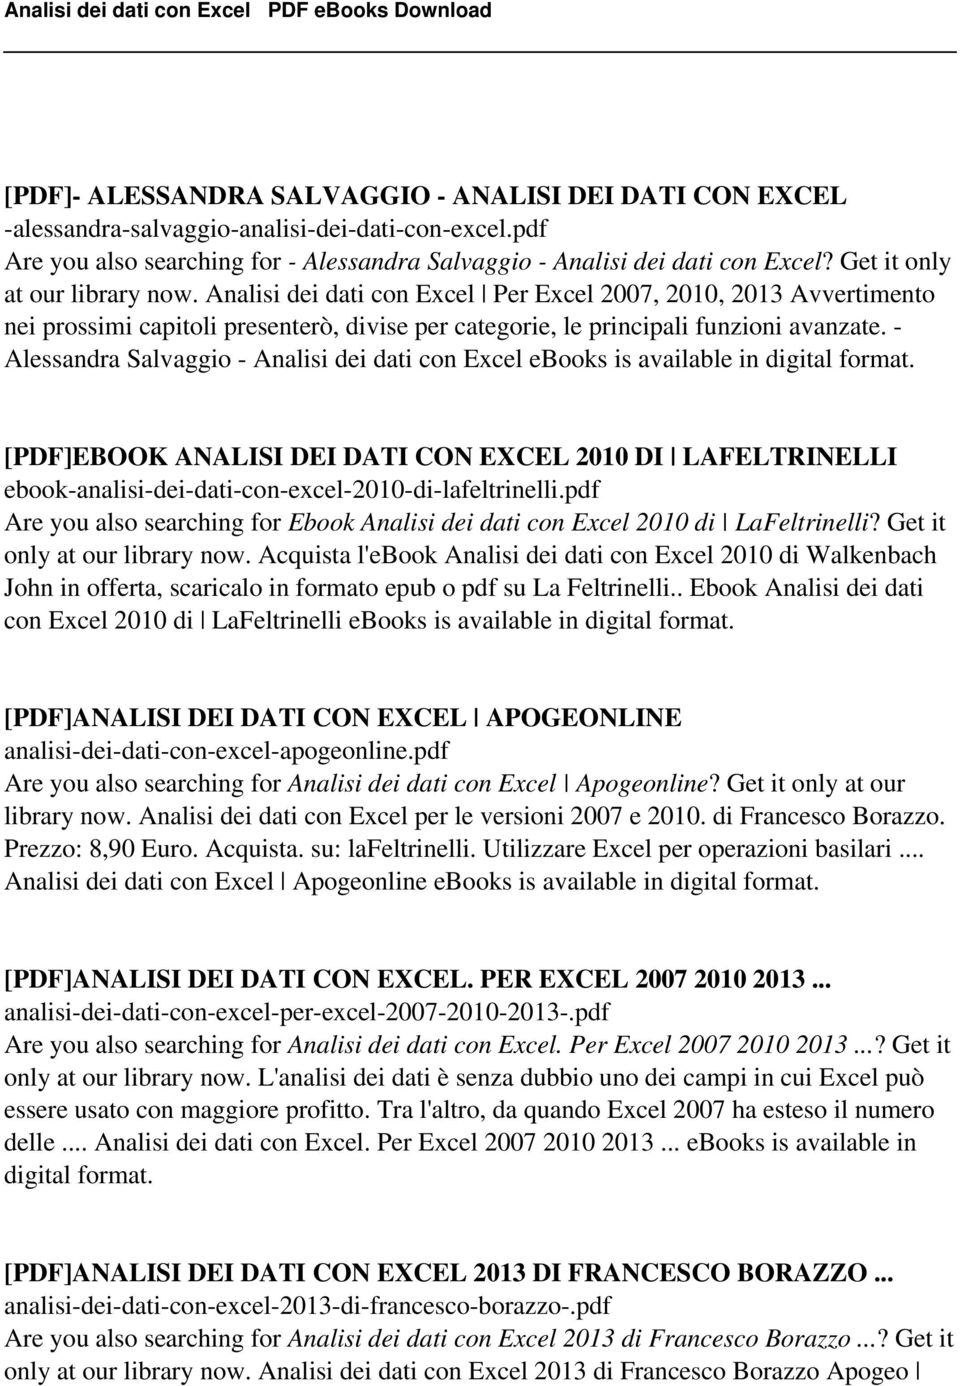 - Alessandra Salvaggio - Analisi dei dati con Excel ebooks is [PDF]EBOOK ANALISI DEI DATI CON EXCEL 2010 DI LAFELTRINELLI ebook-analisi-dei-dati-con-excel-2010-di-lafeltrinelli.